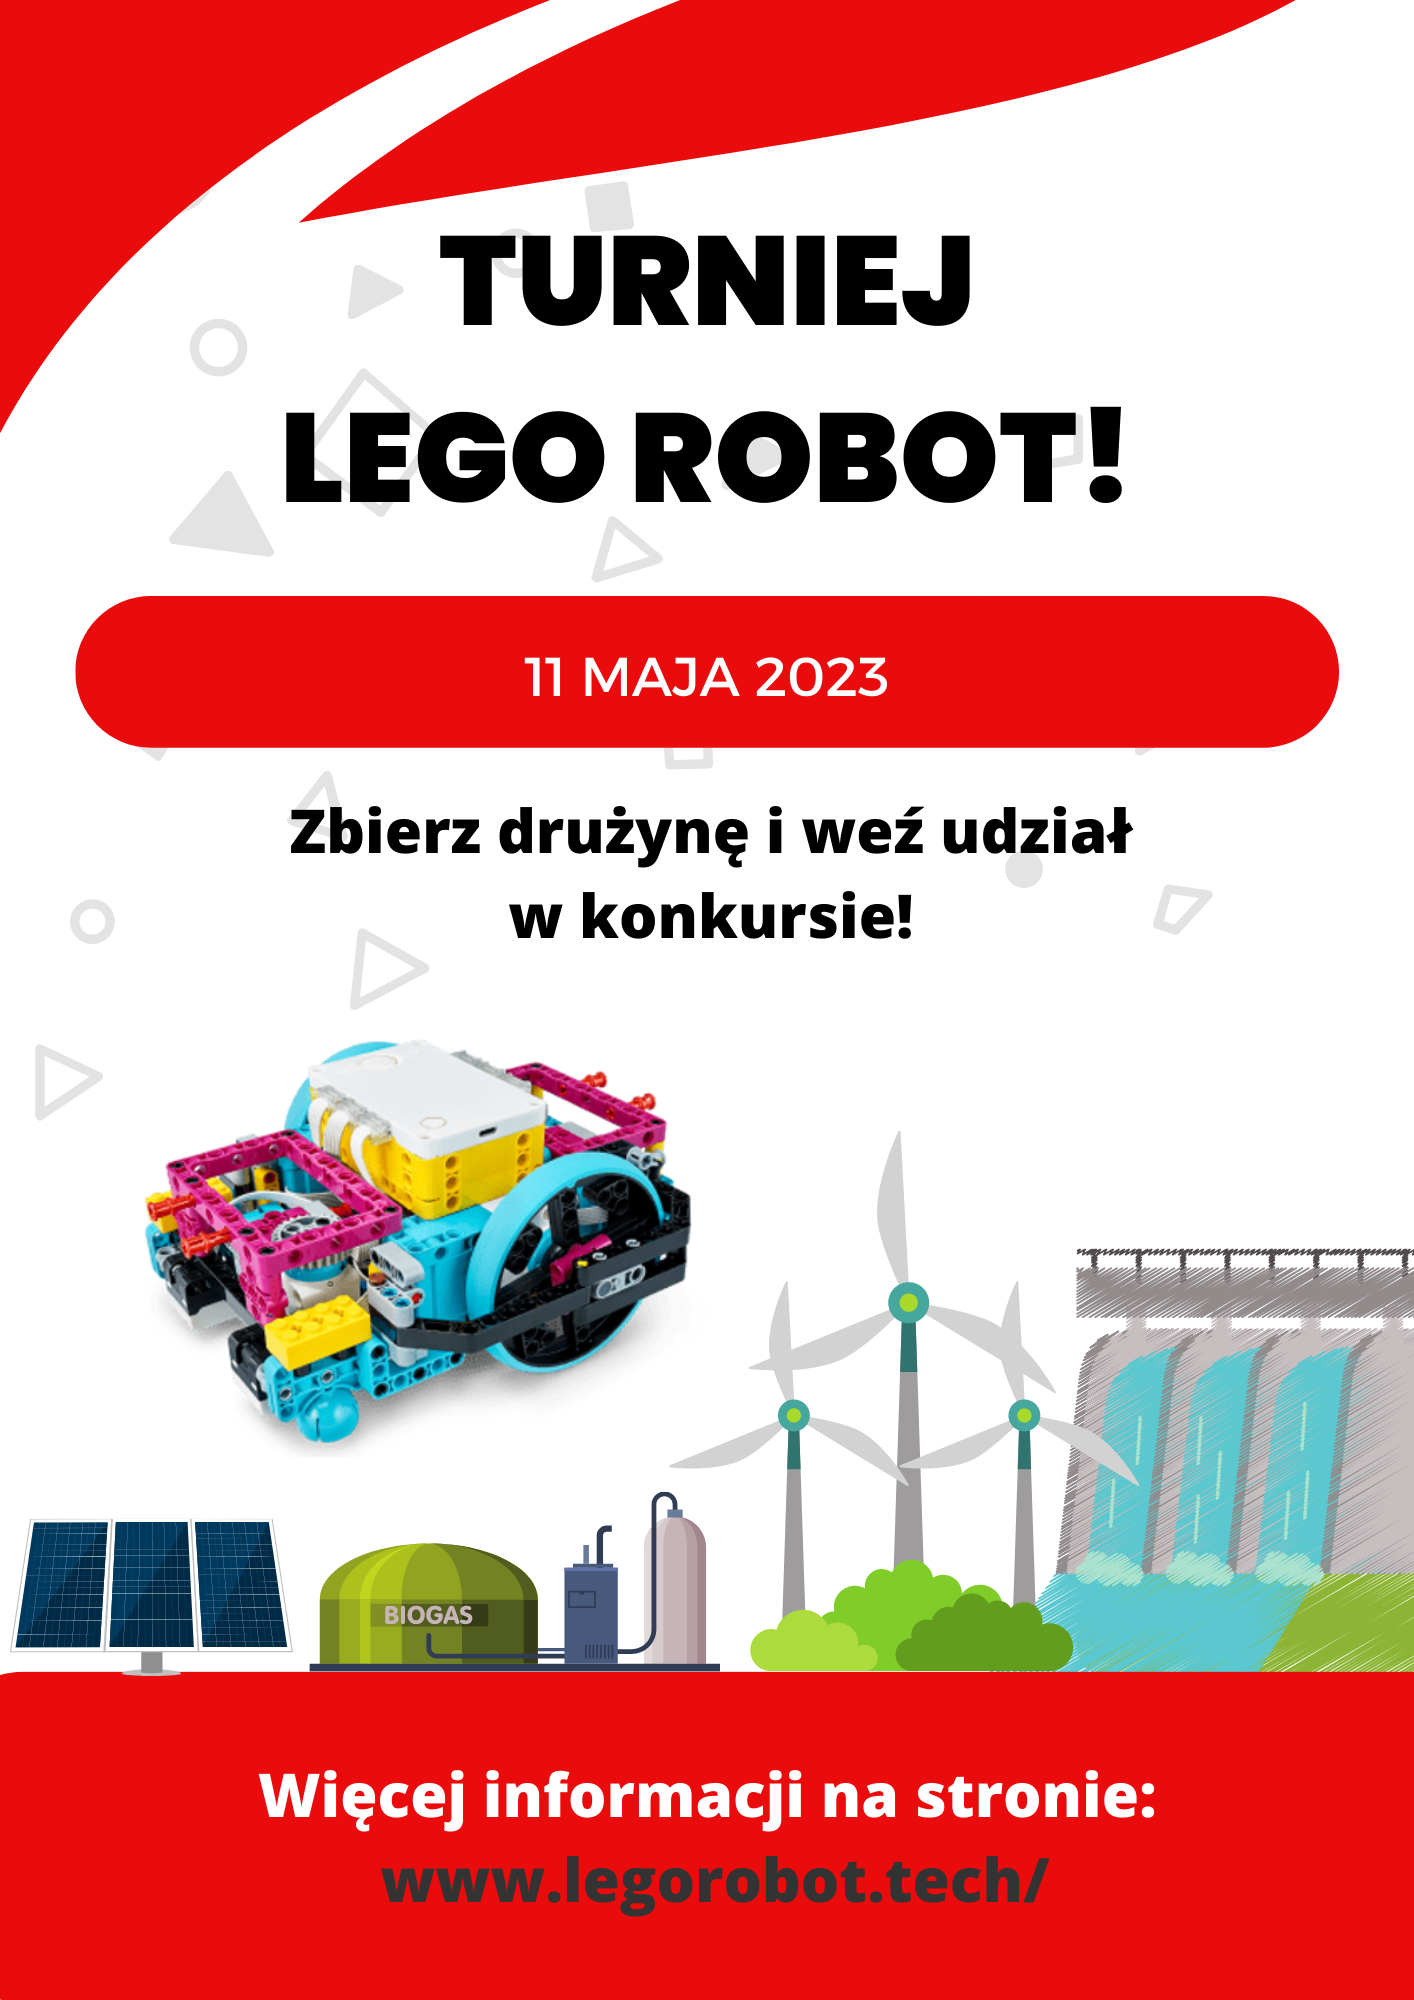 LEGO ROBOT 2023